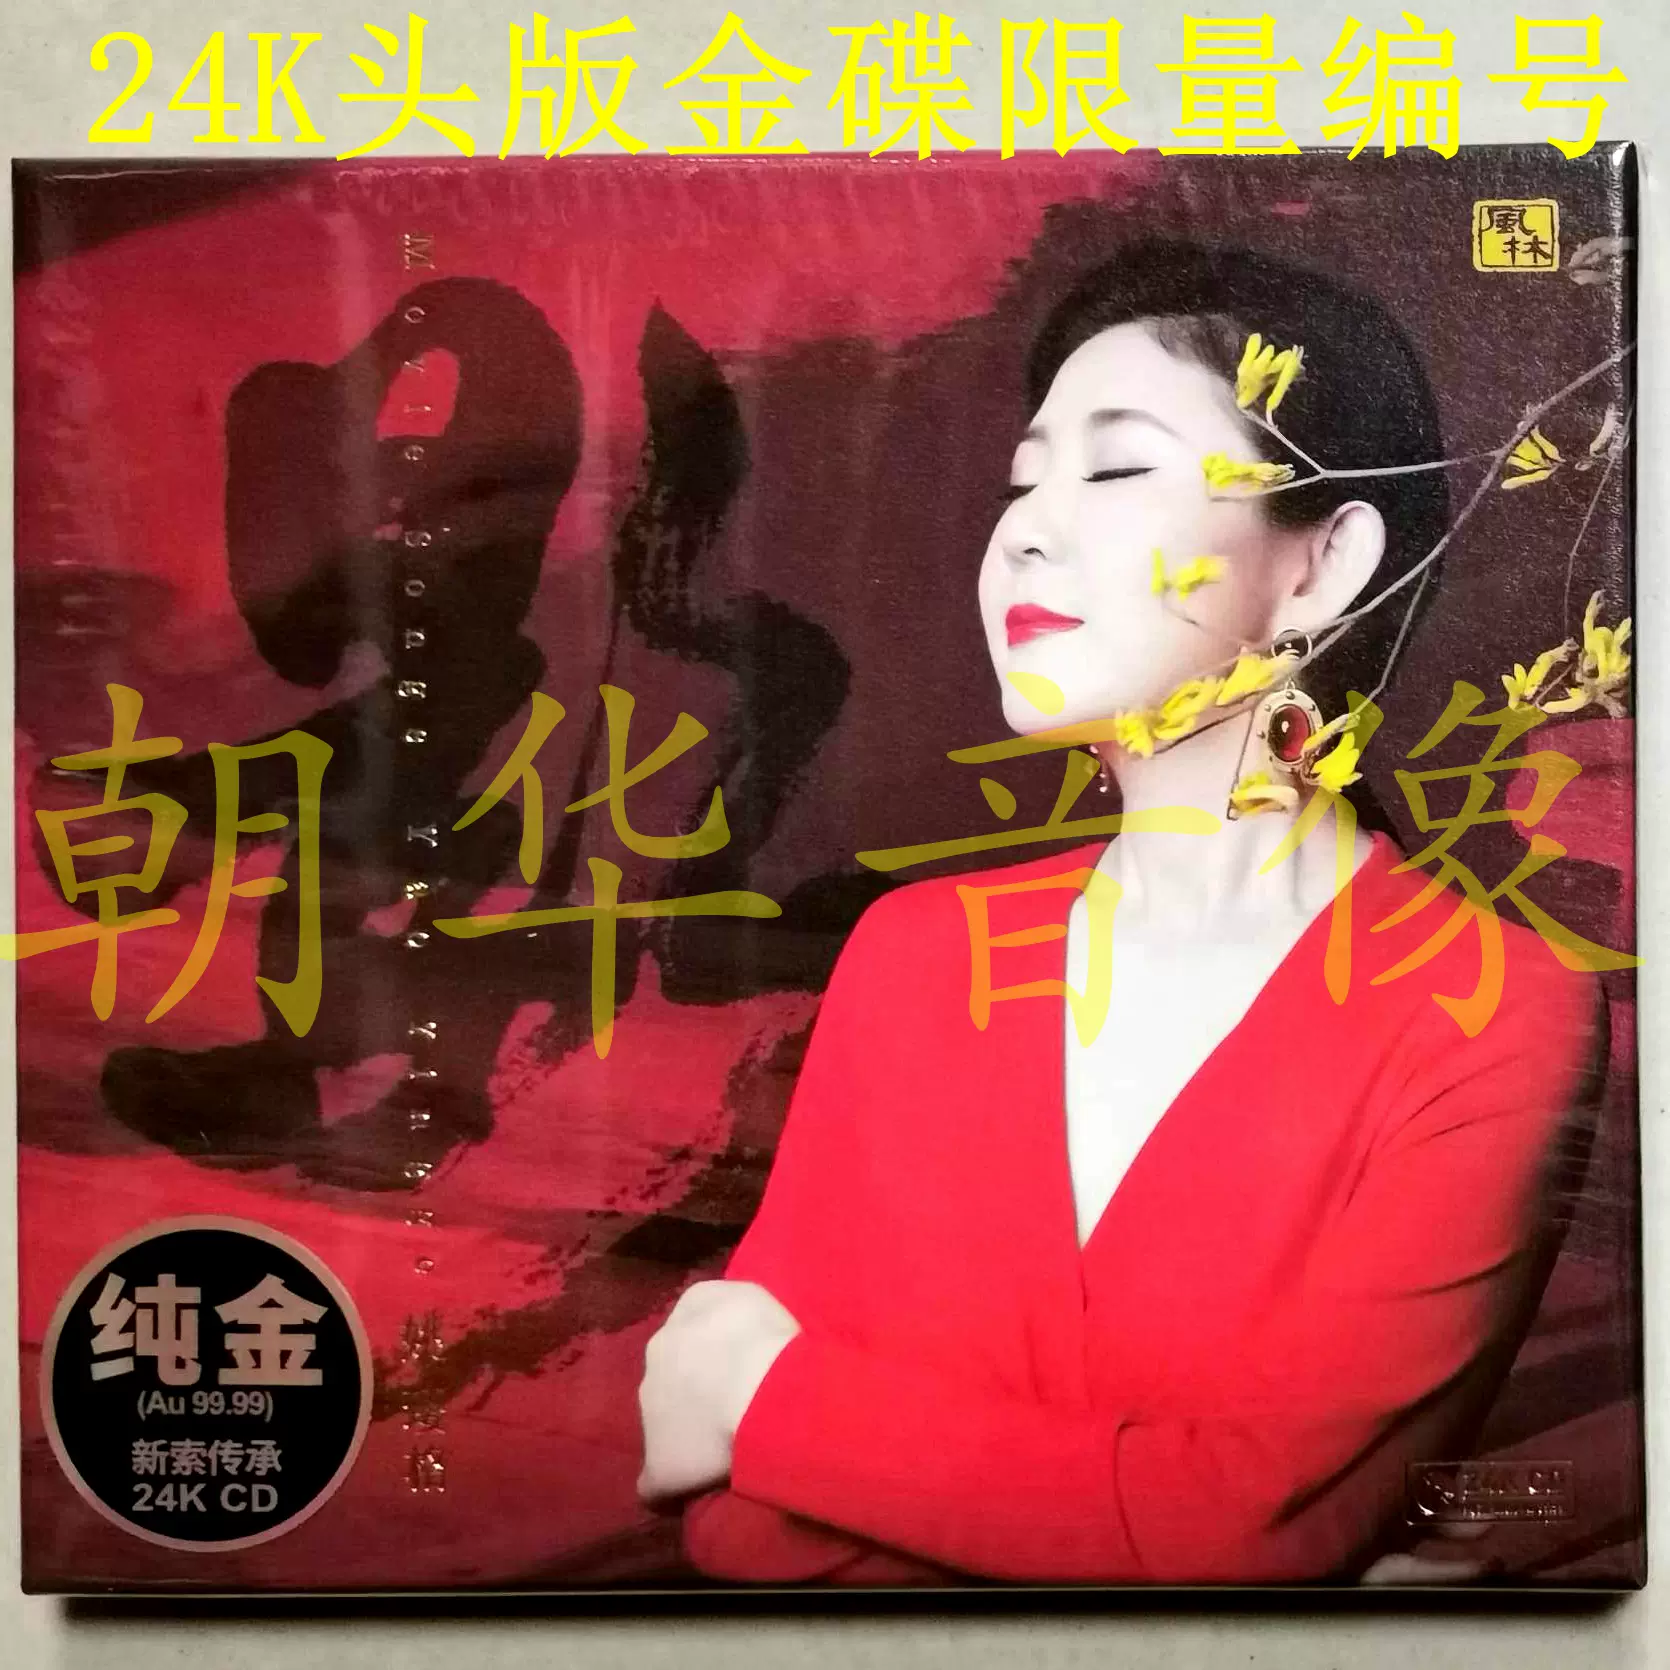 正版姚璎格影24K金碟CD高品质人声发烧头版风林女中音影视歌曲-Taobao 